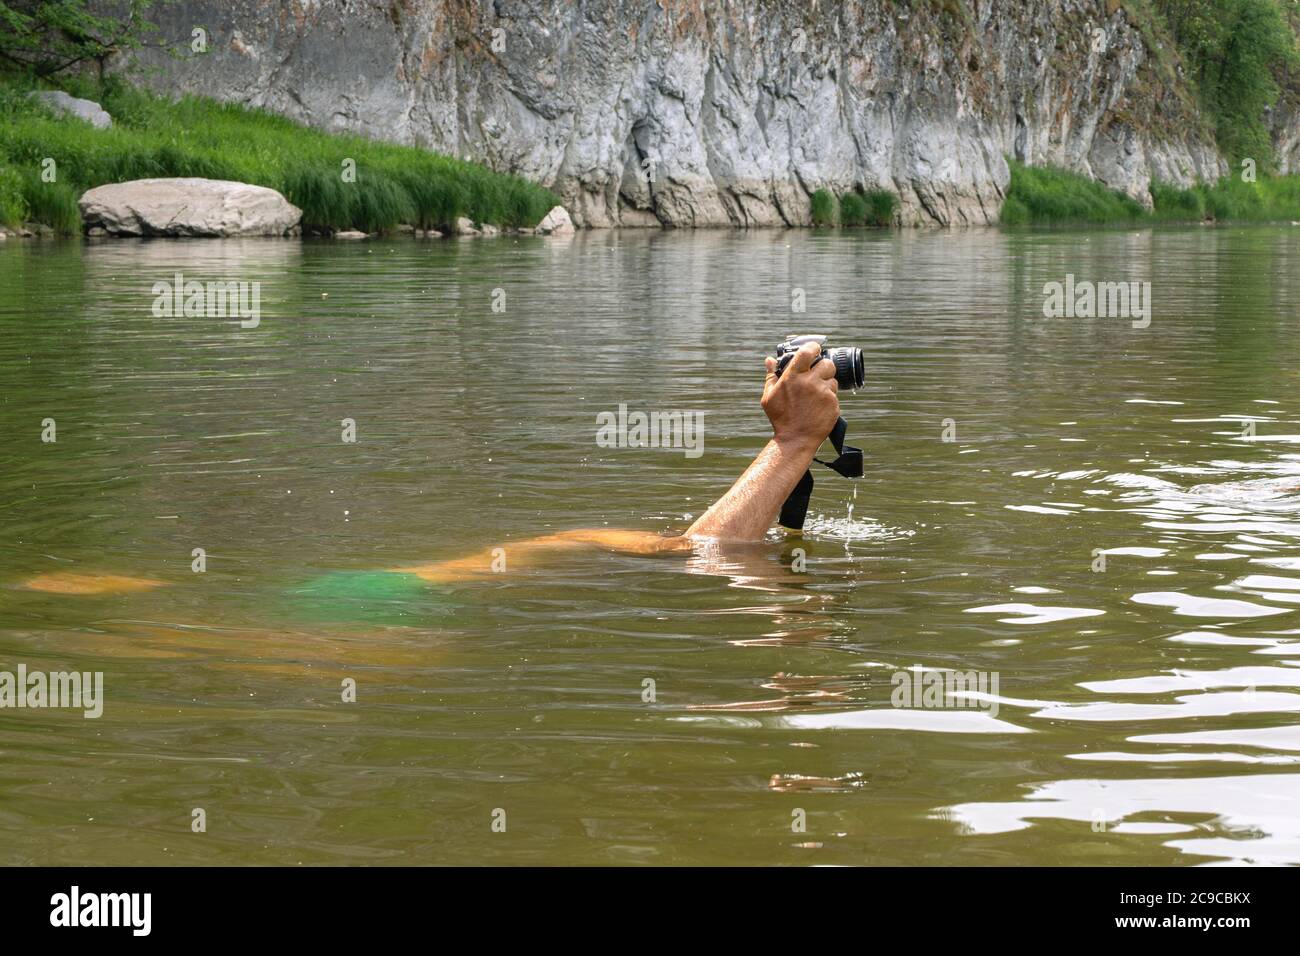 Hombre buceando bajo agua sosteniendo la cámara en mano sobre el Persona nadando en el depósito de agua natural haciendo fotos con la cámara digital. Naturaleza, salvaje Fotografía de